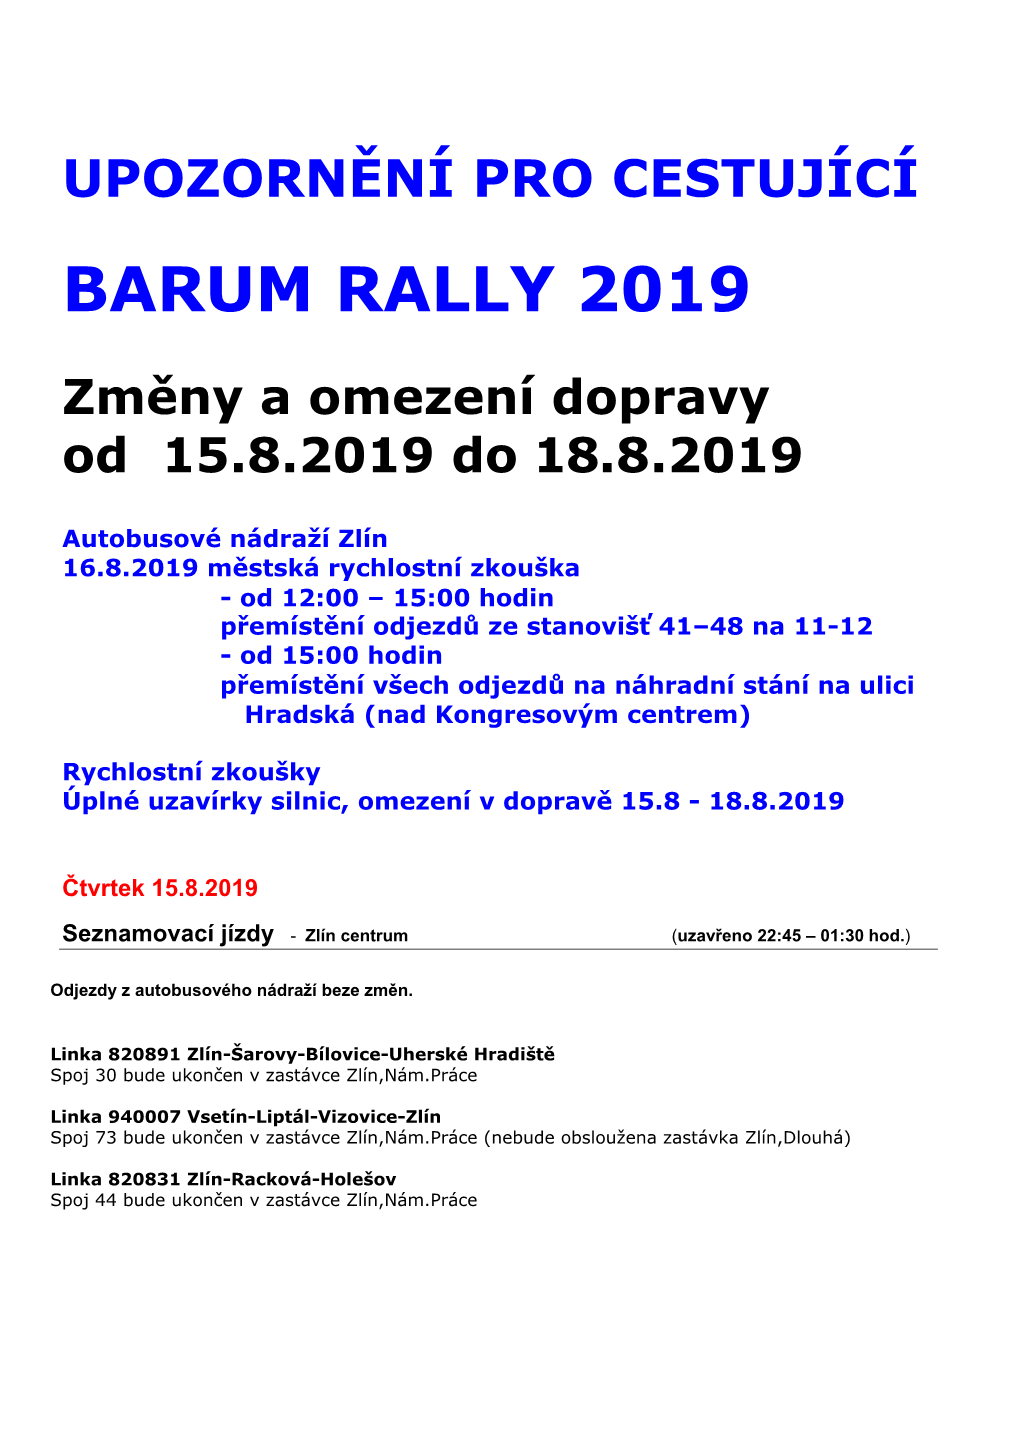 Upozornění Pro Cestující Barum Rally 2019